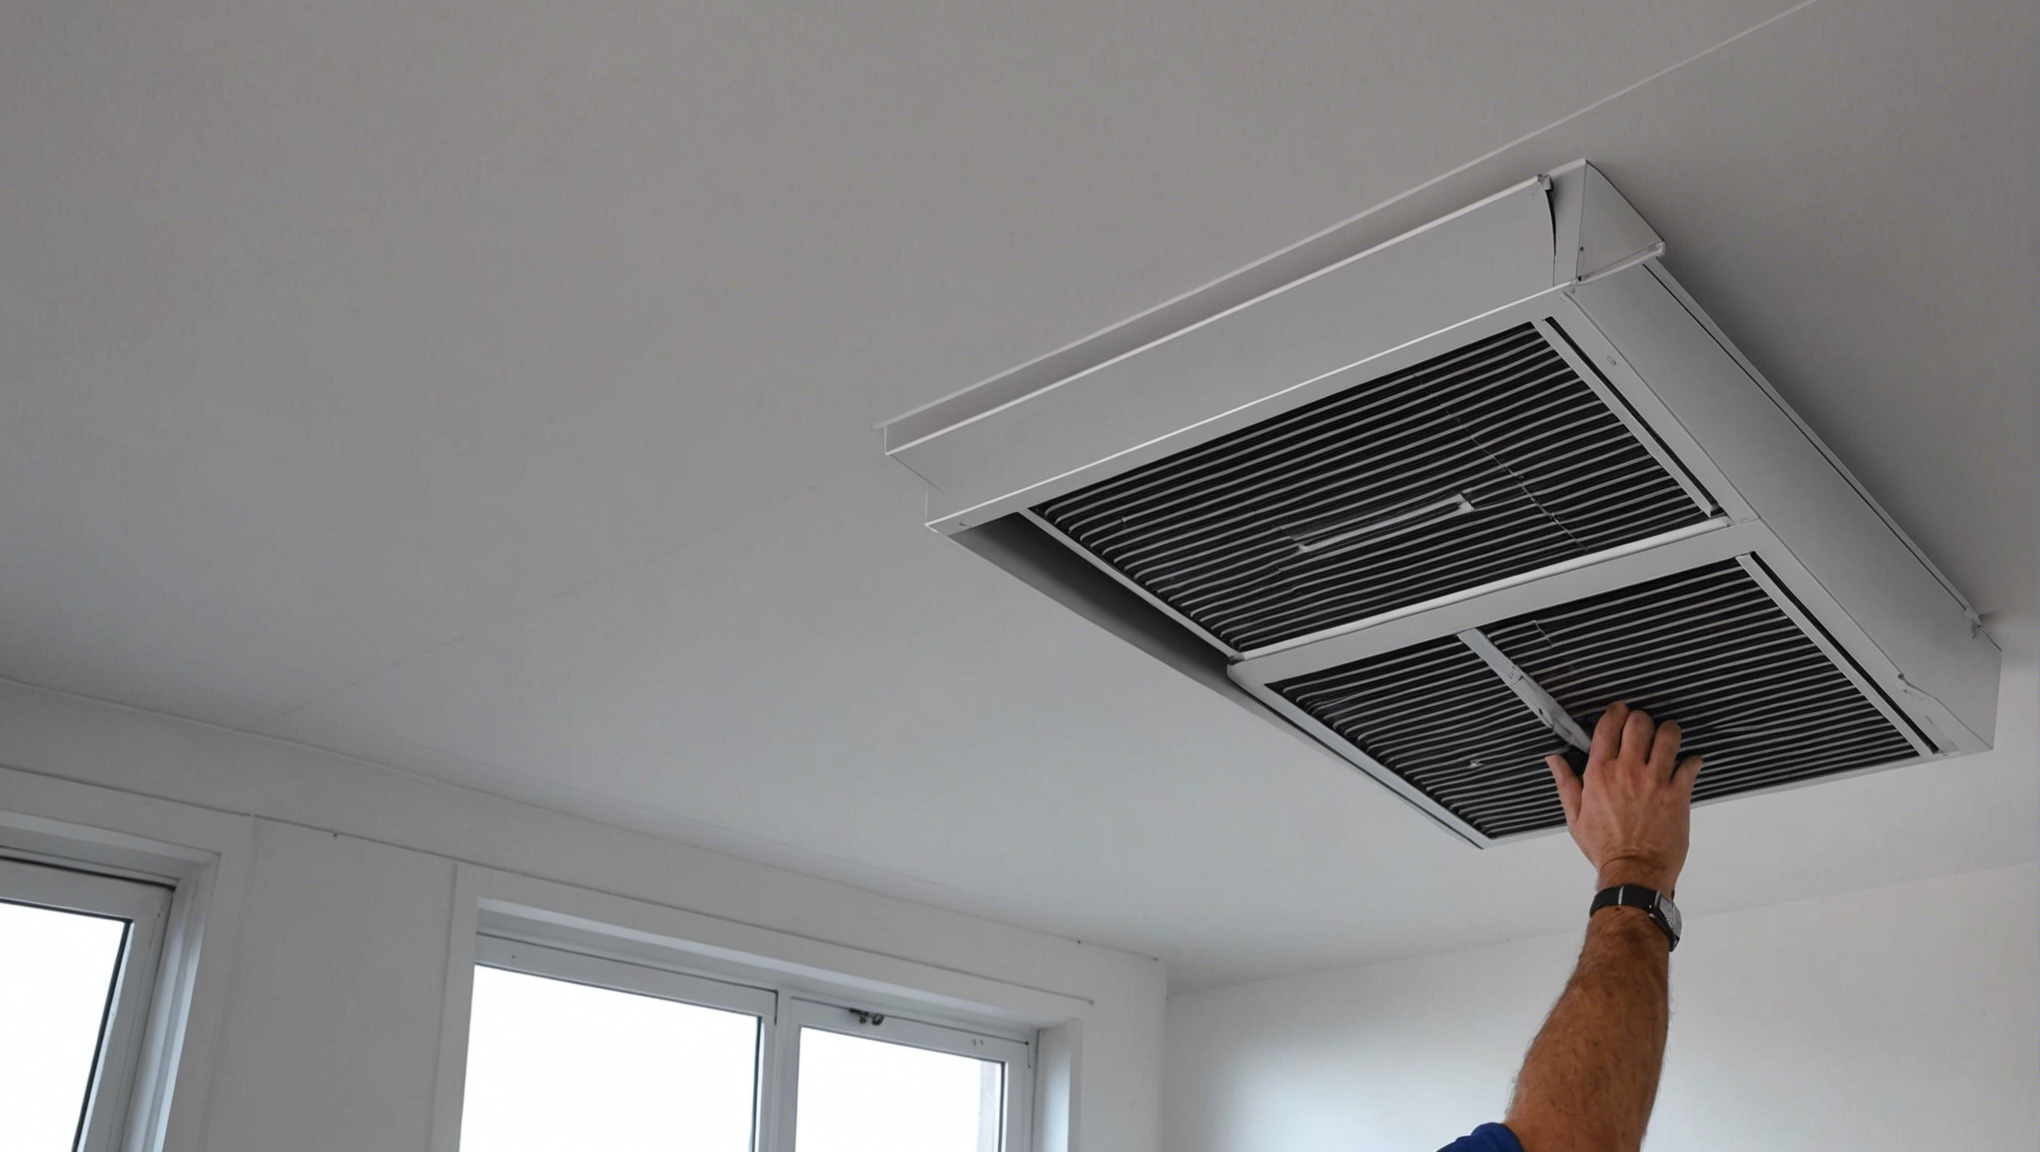 découvrez nos services d'installation de ventilation pour assurer un air sain et une maîtrise de la température dans votre domicile ou lieu de travail. faites confiance à nos experts pour un système de ventilation adapté à vos besoins.